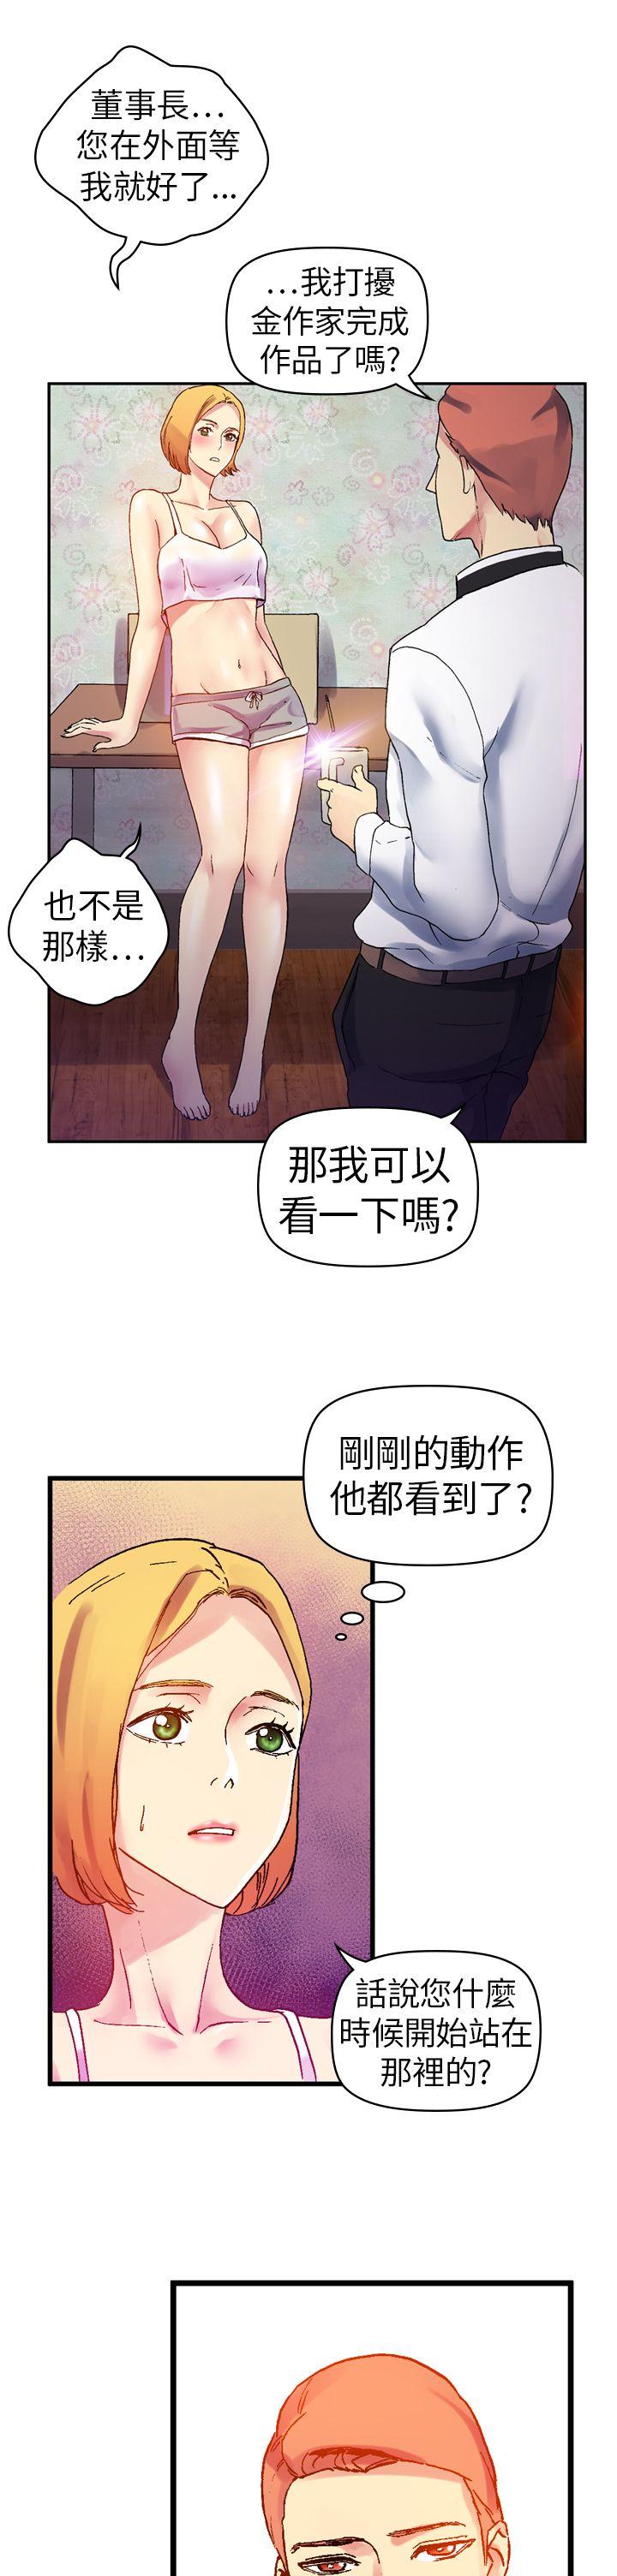 韩国污漫画 幻想中的她(完結) 第10话 29